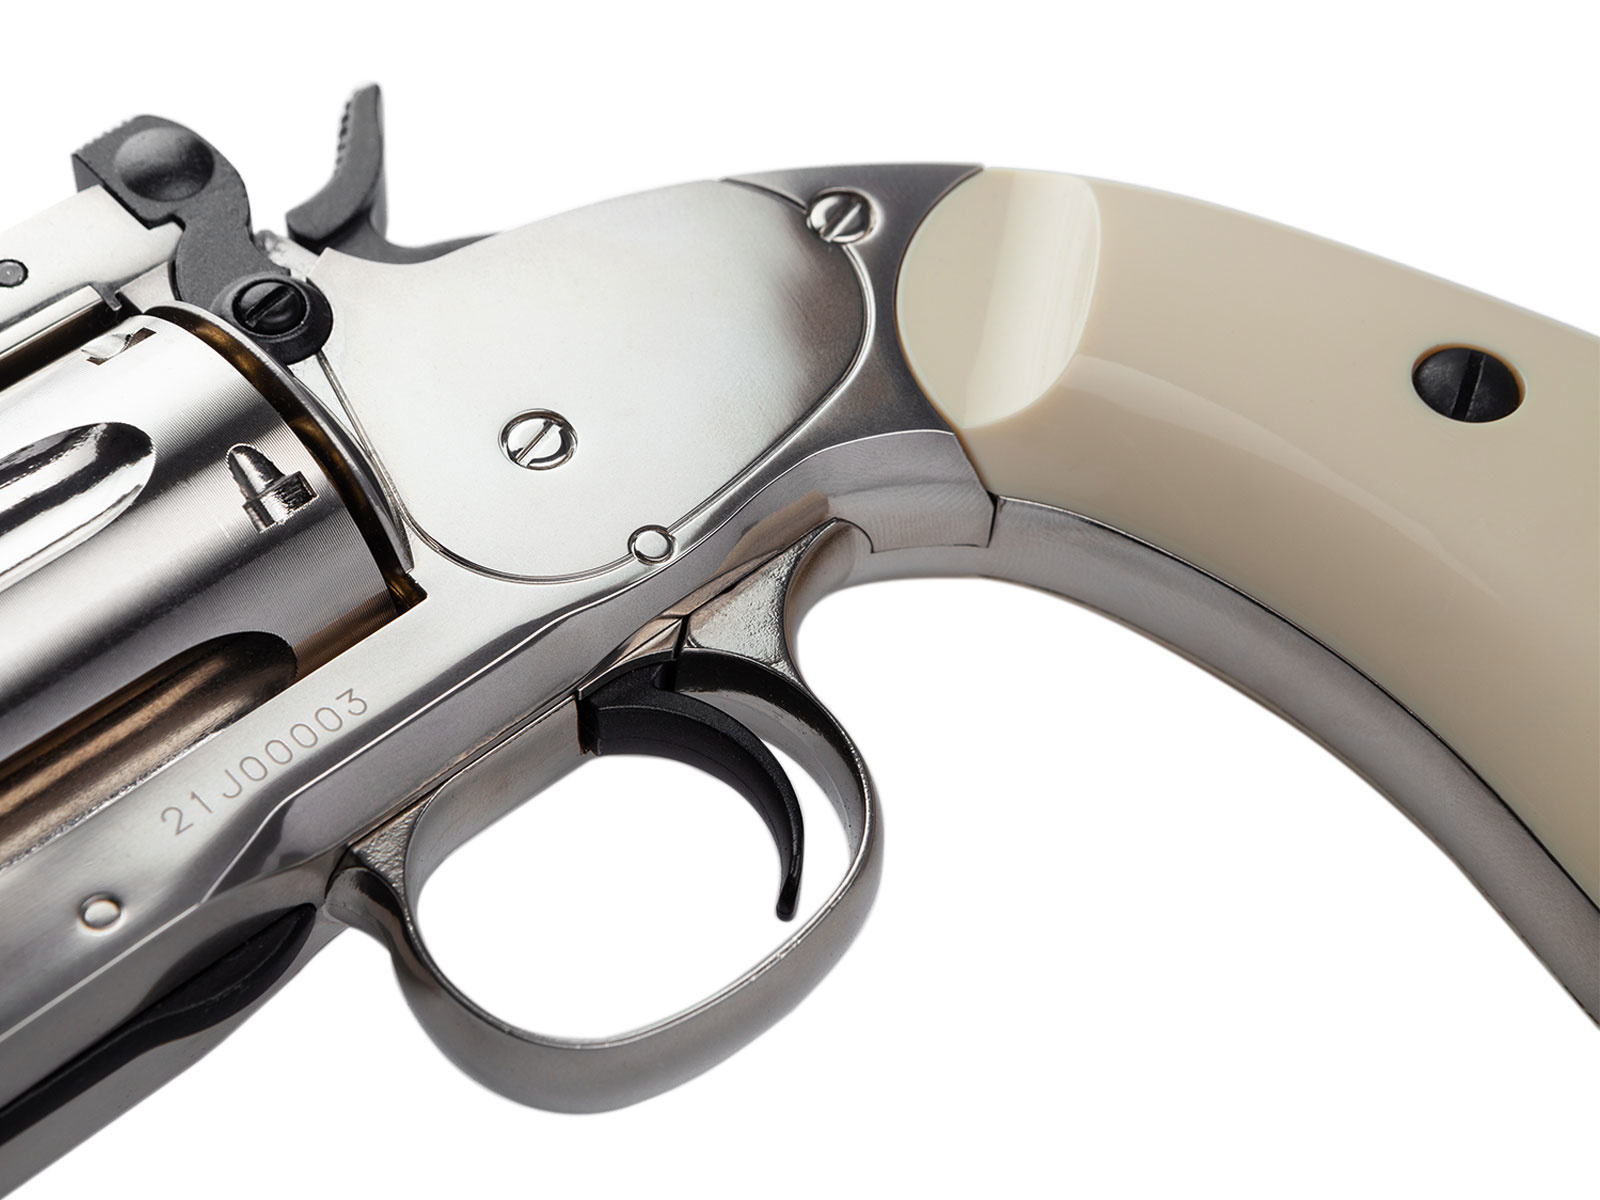 ASG Revolver 6 pouces Schofield Co2 2.0 joules - argent